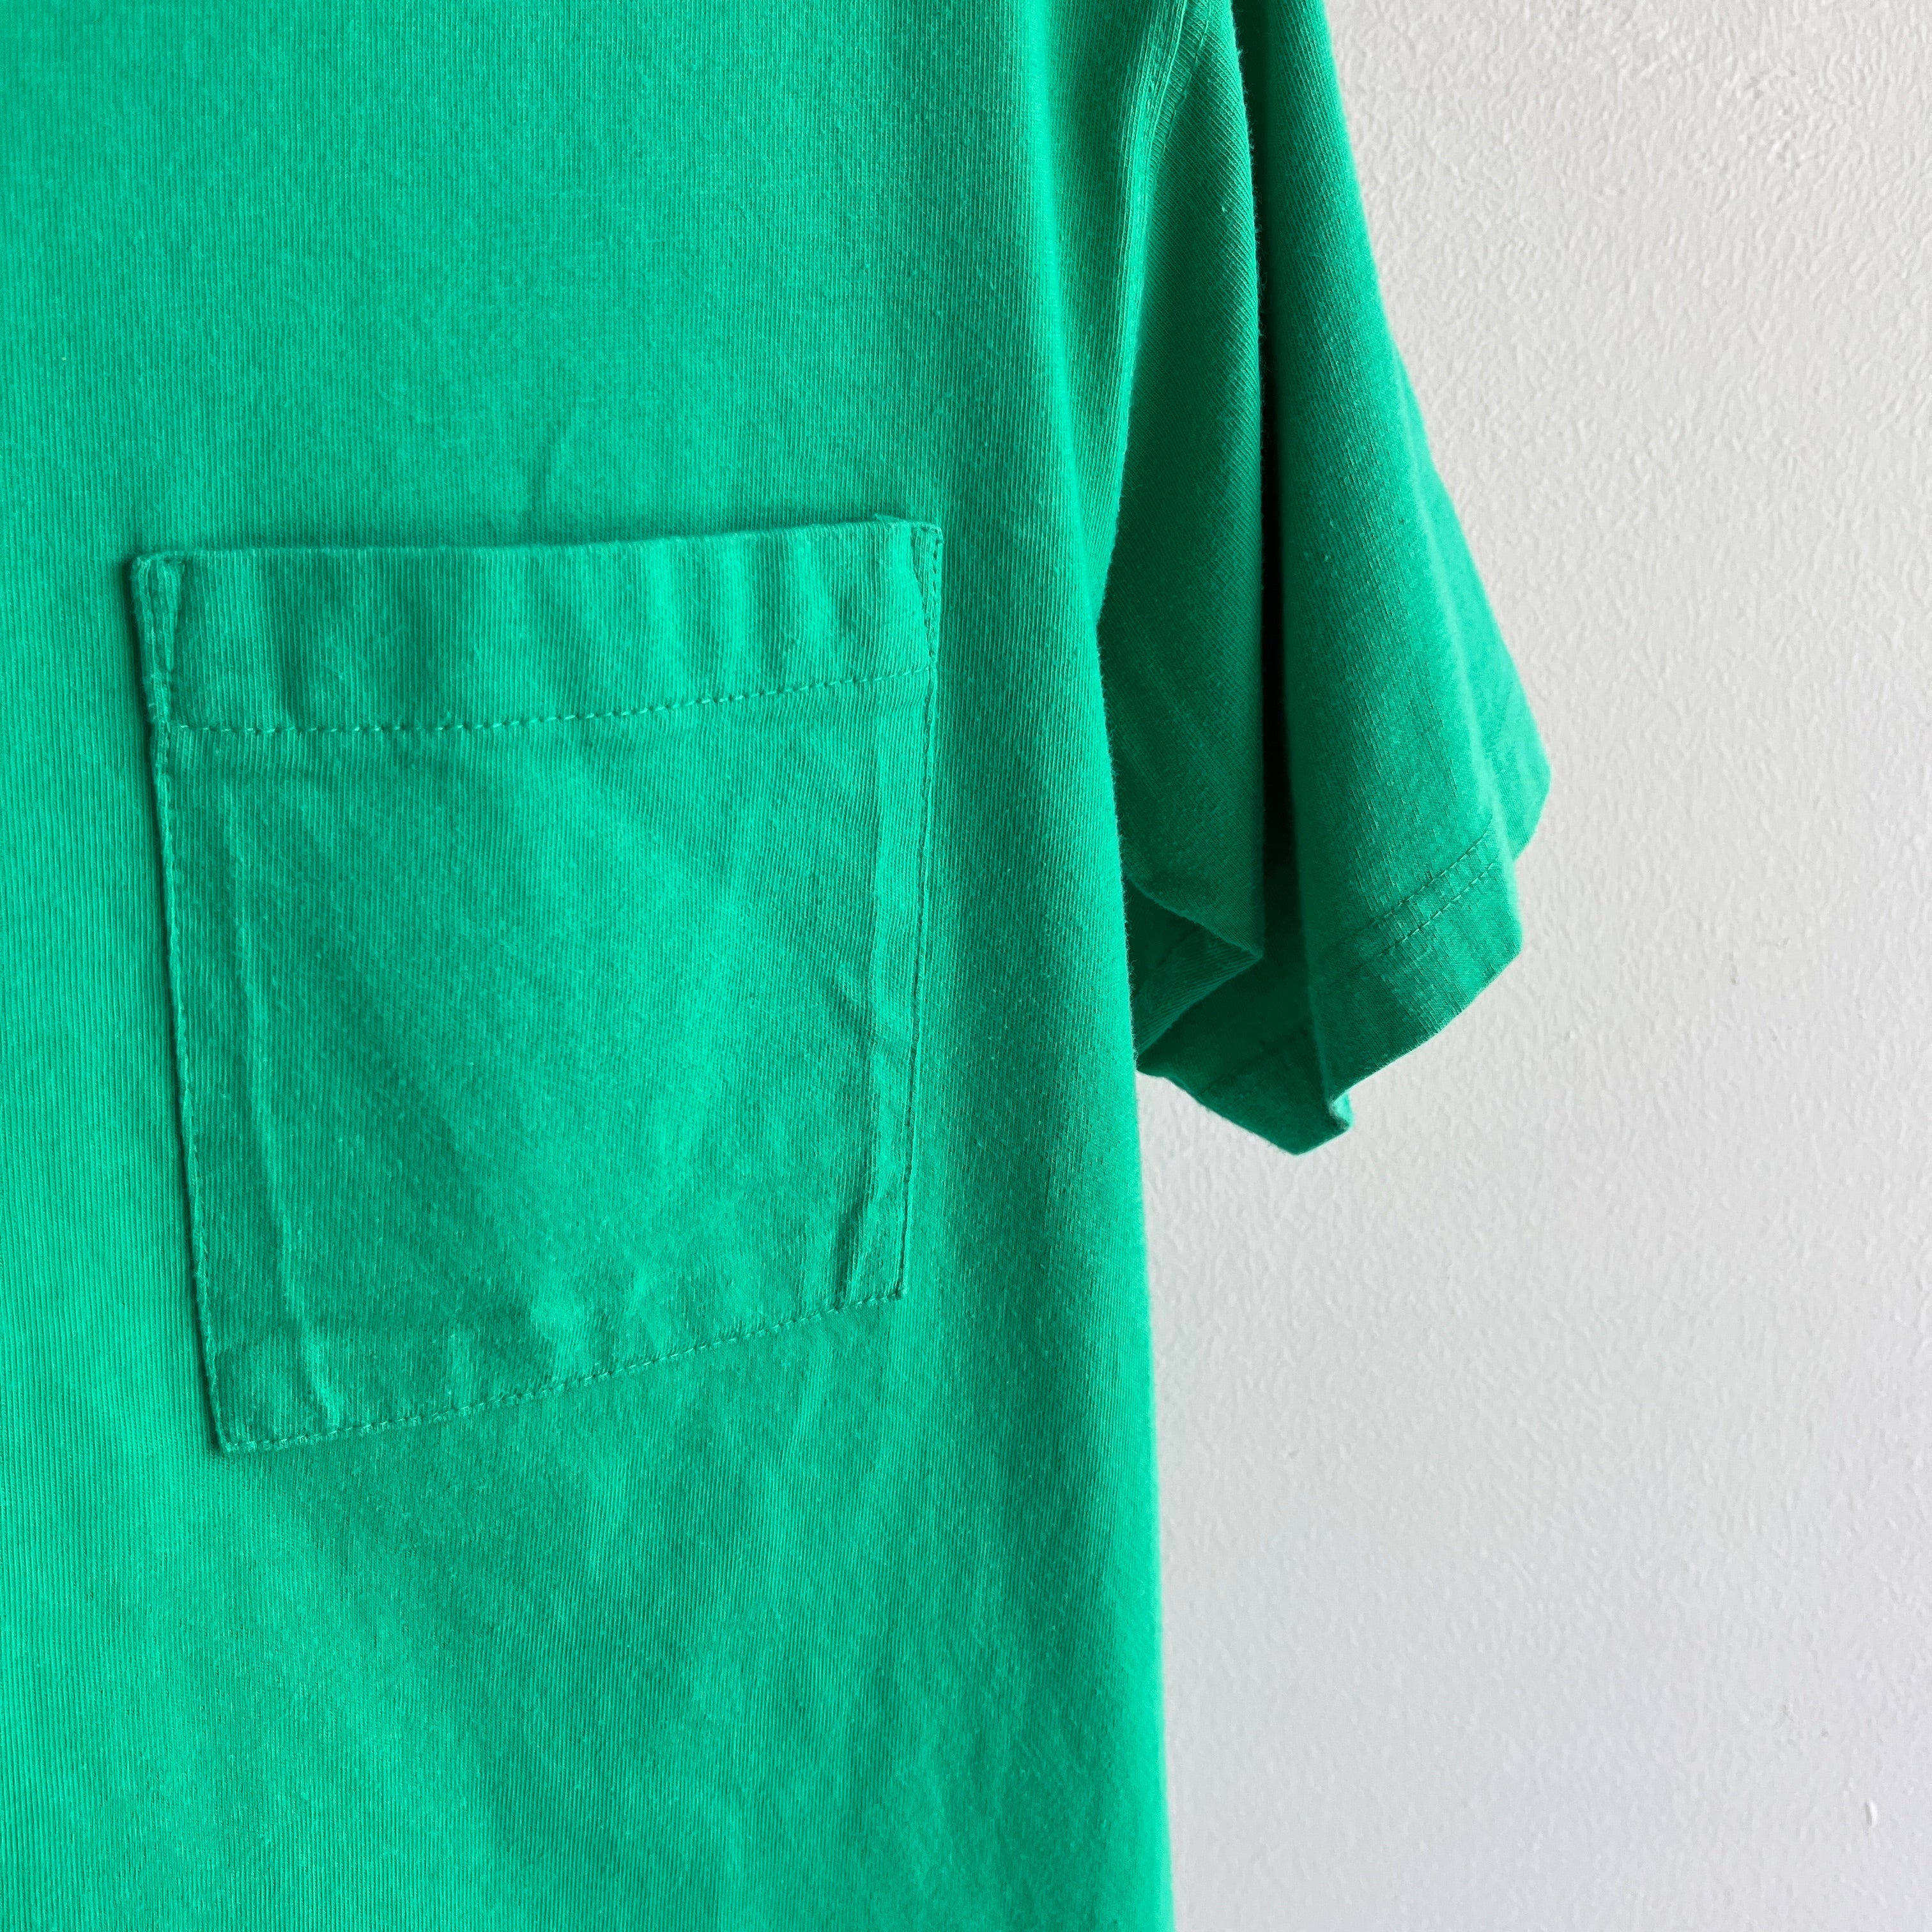 1990s Eddie Bauer Pocket Grass Green Super Soft Cotton T-shirt